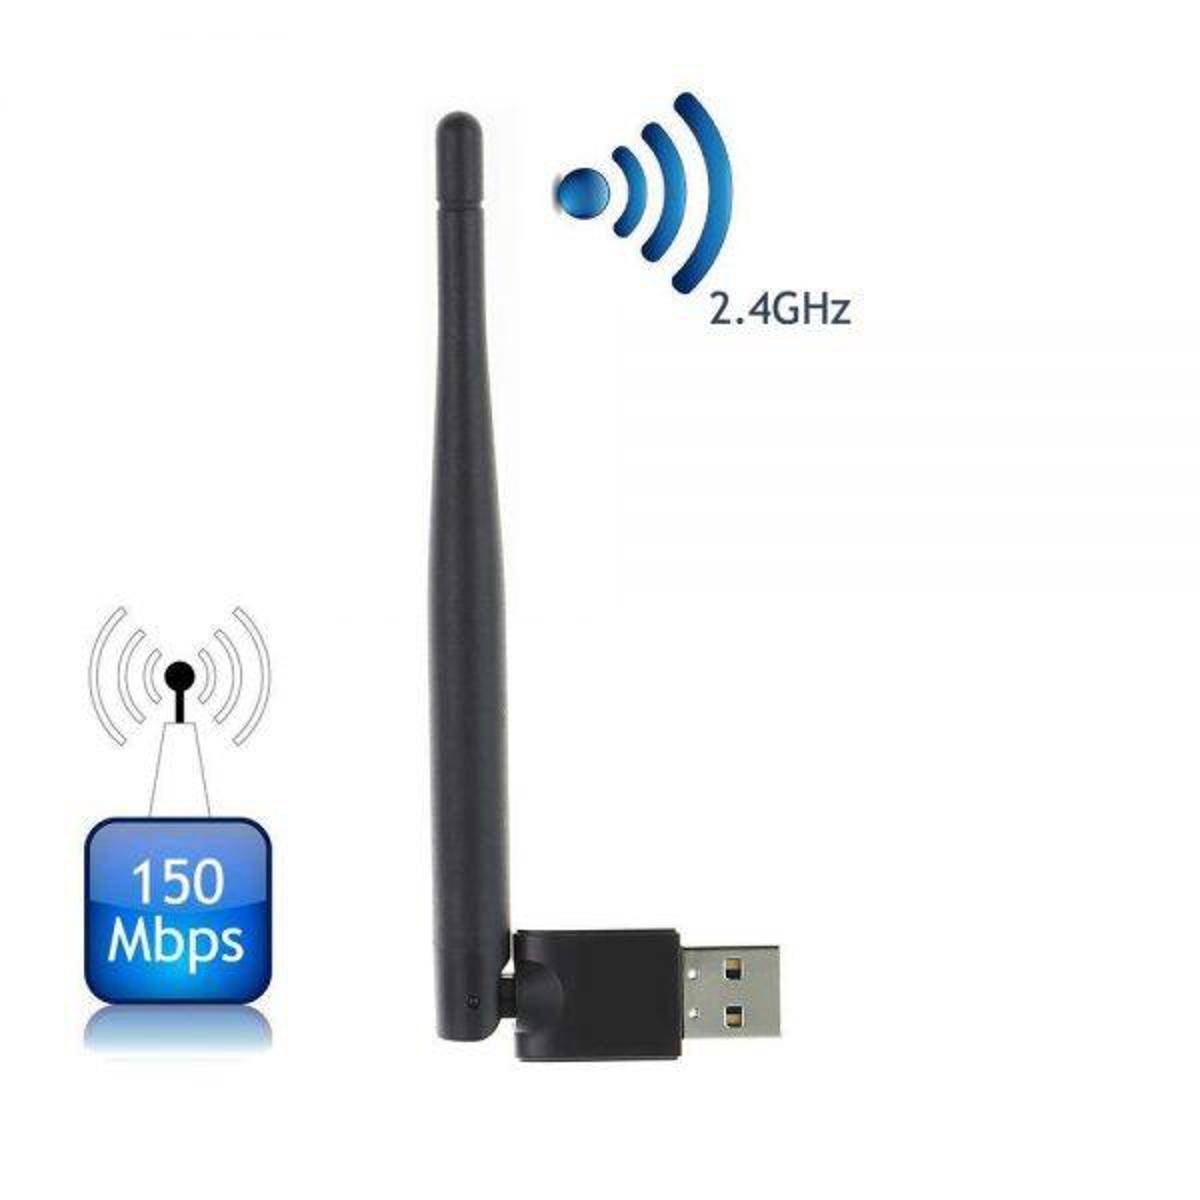 Wireless Usb adapter ALFA W114 - Fixed 3dbi Antenna - Soft AP Wi-Fi Utility - DVR / IPTV / Player Receiver